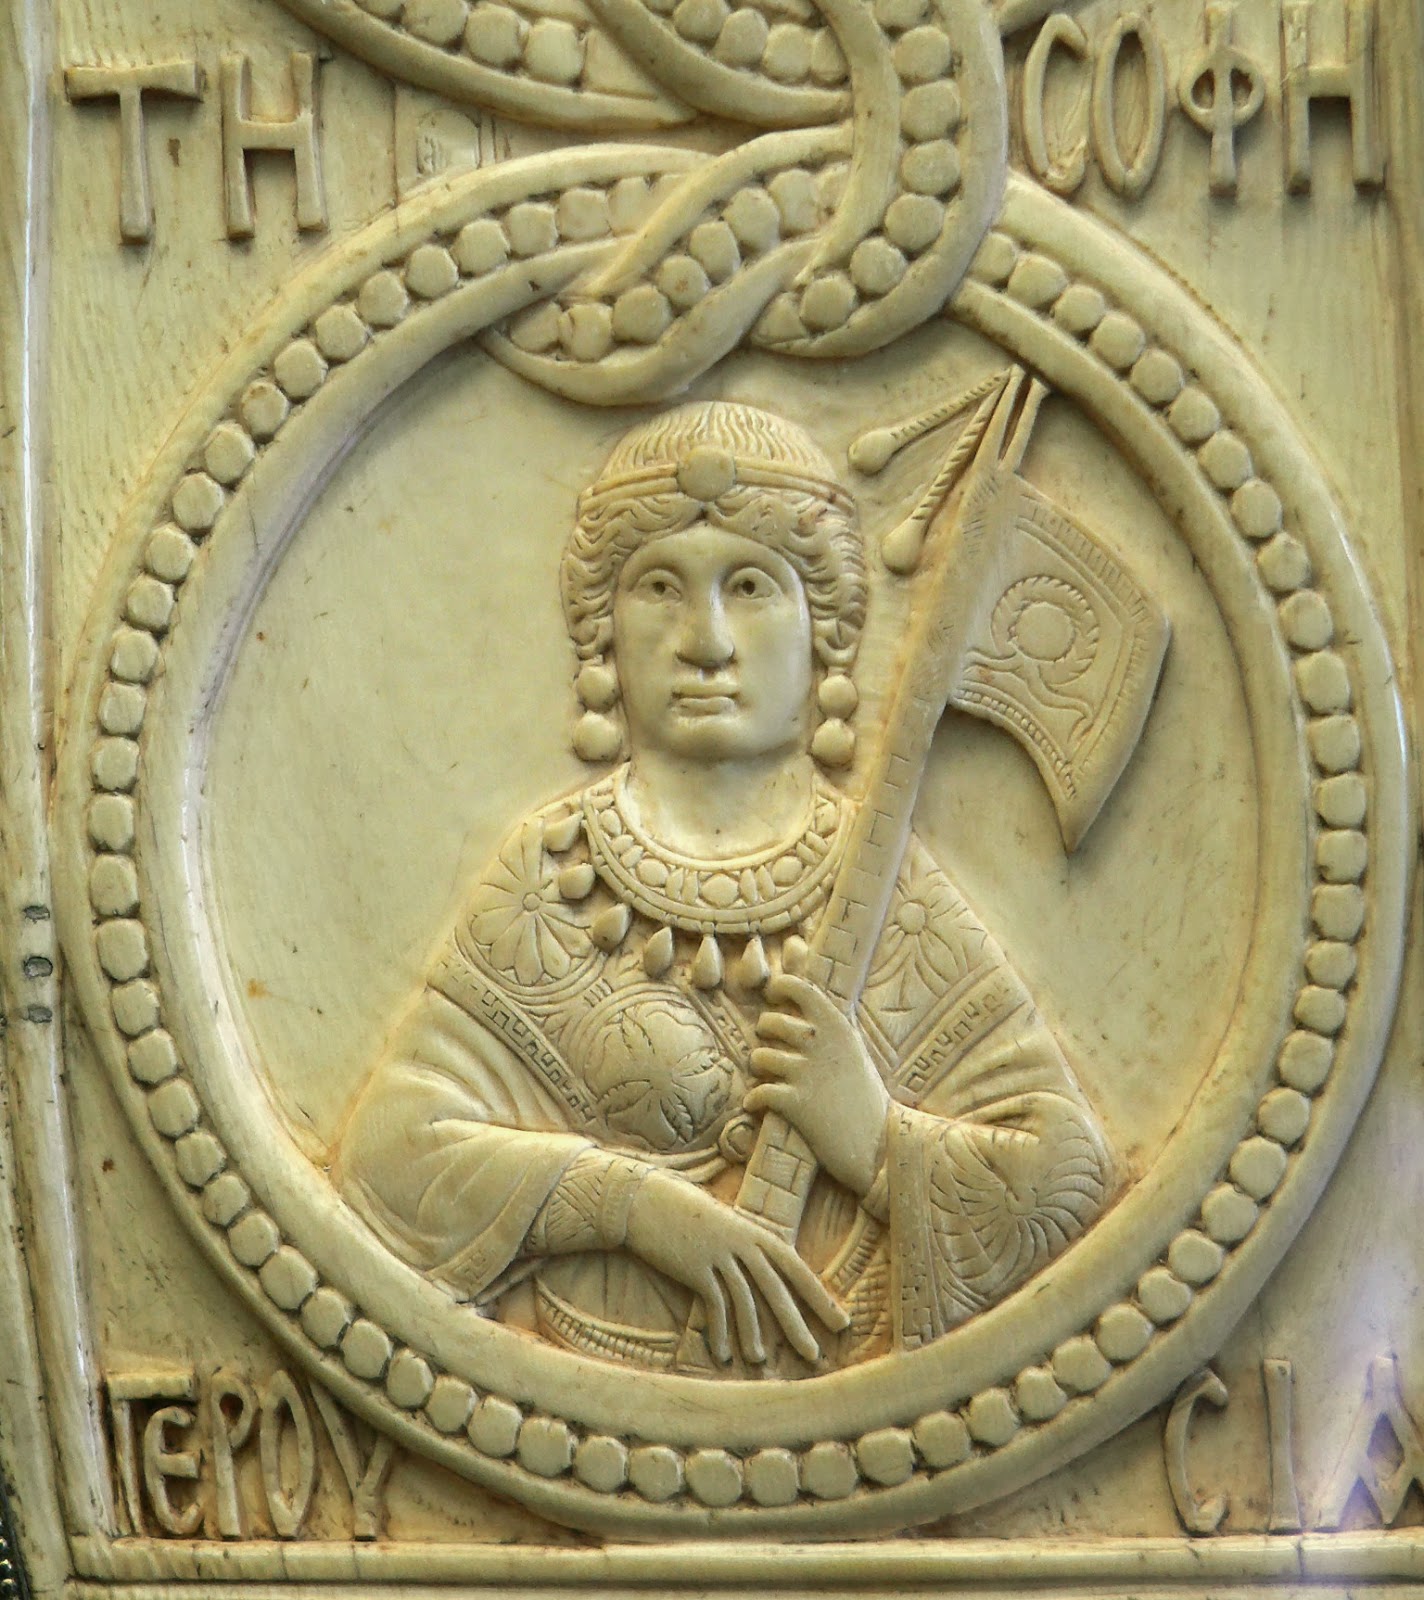  Το βυζαντινό υπατικό δίπτυχο του Φλάβιου Θεοδώρου Φιλόξενου.http://leipsanothiki.blogspot.be/